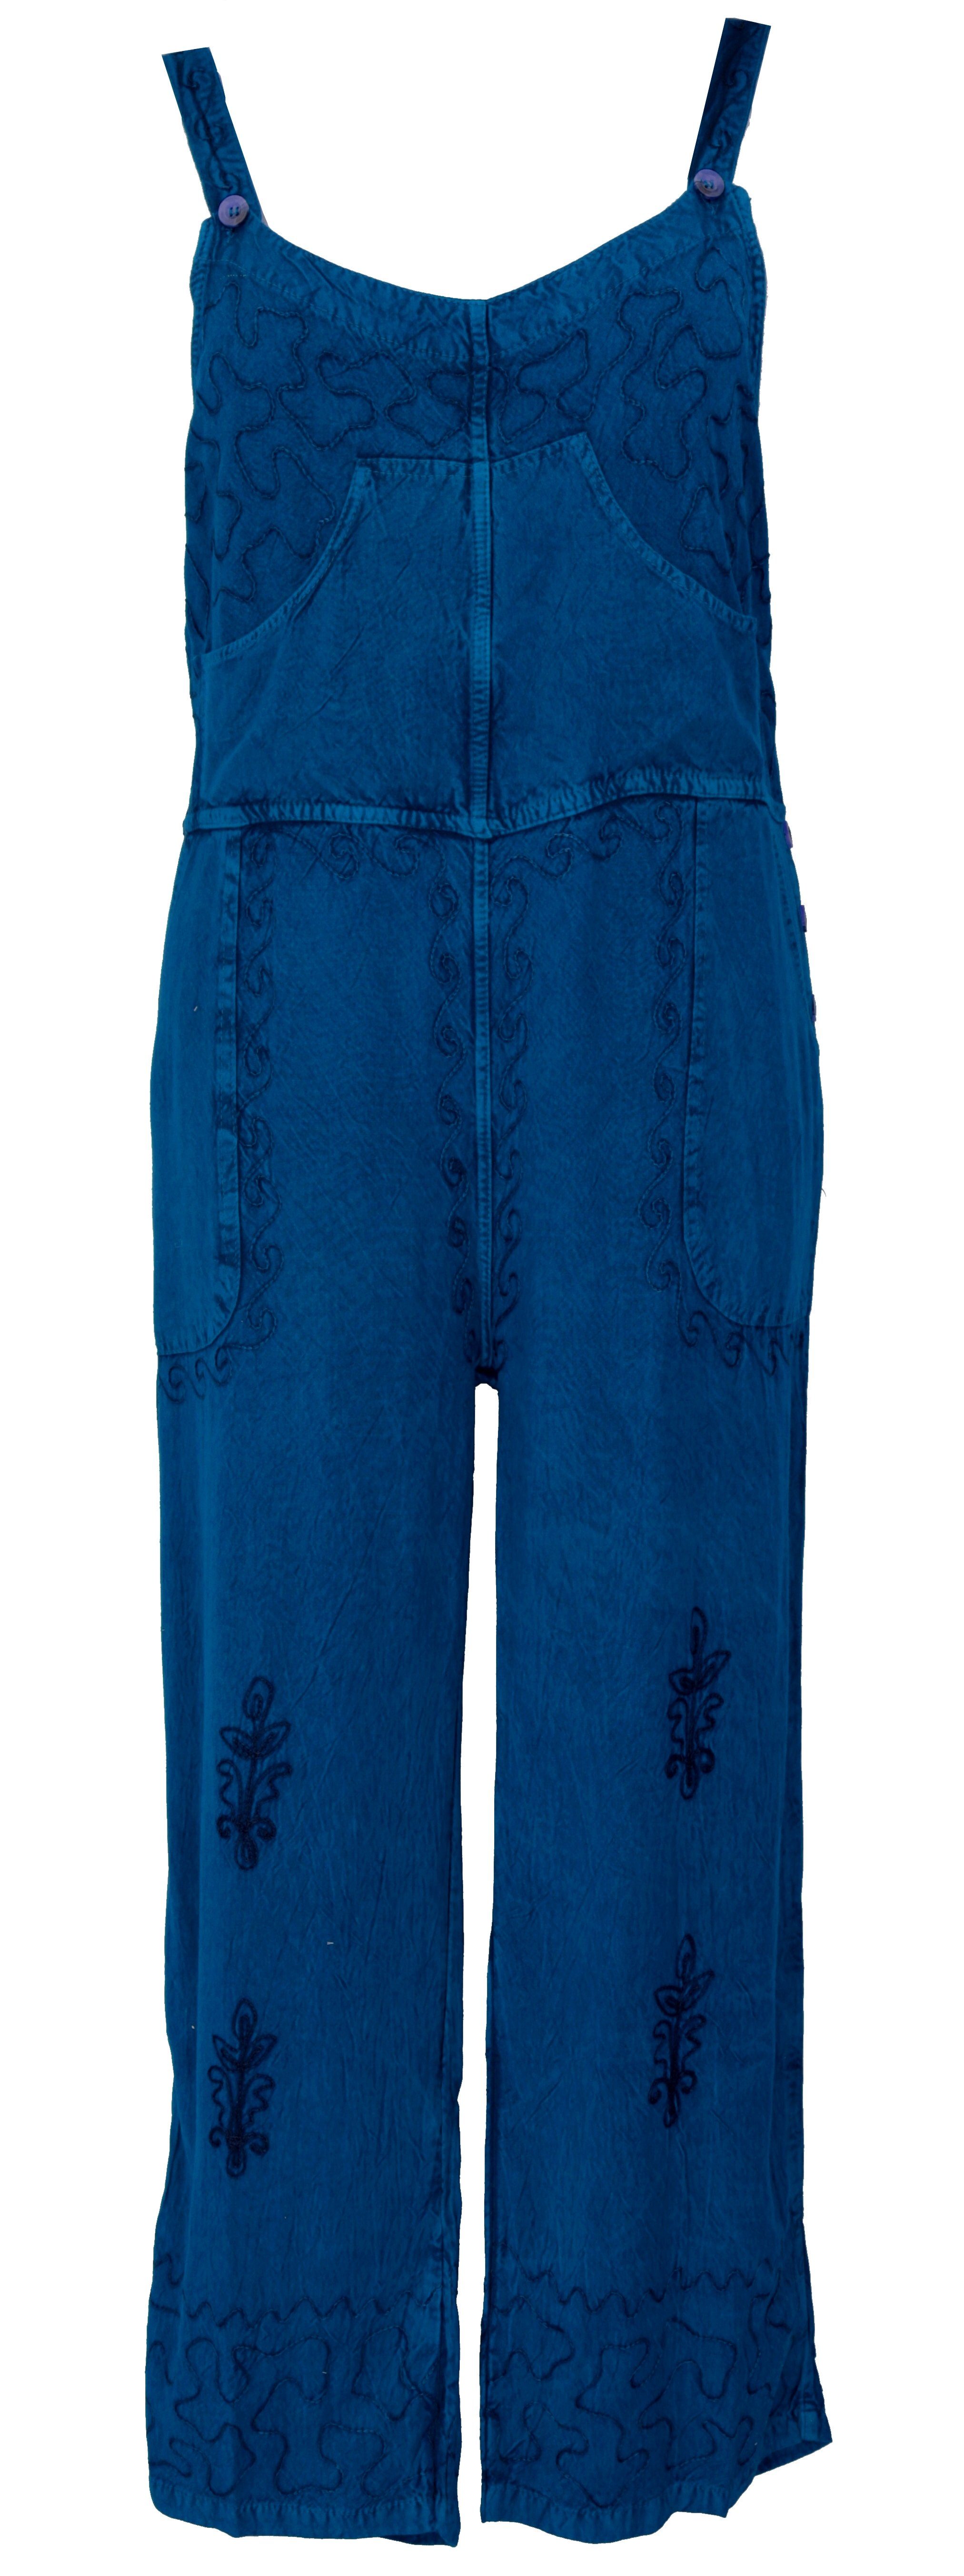 Hose, Boho bestickter Relaxhose Overall Bekleidung alternative -.. Latzhose, Guru-Shop jeansblau